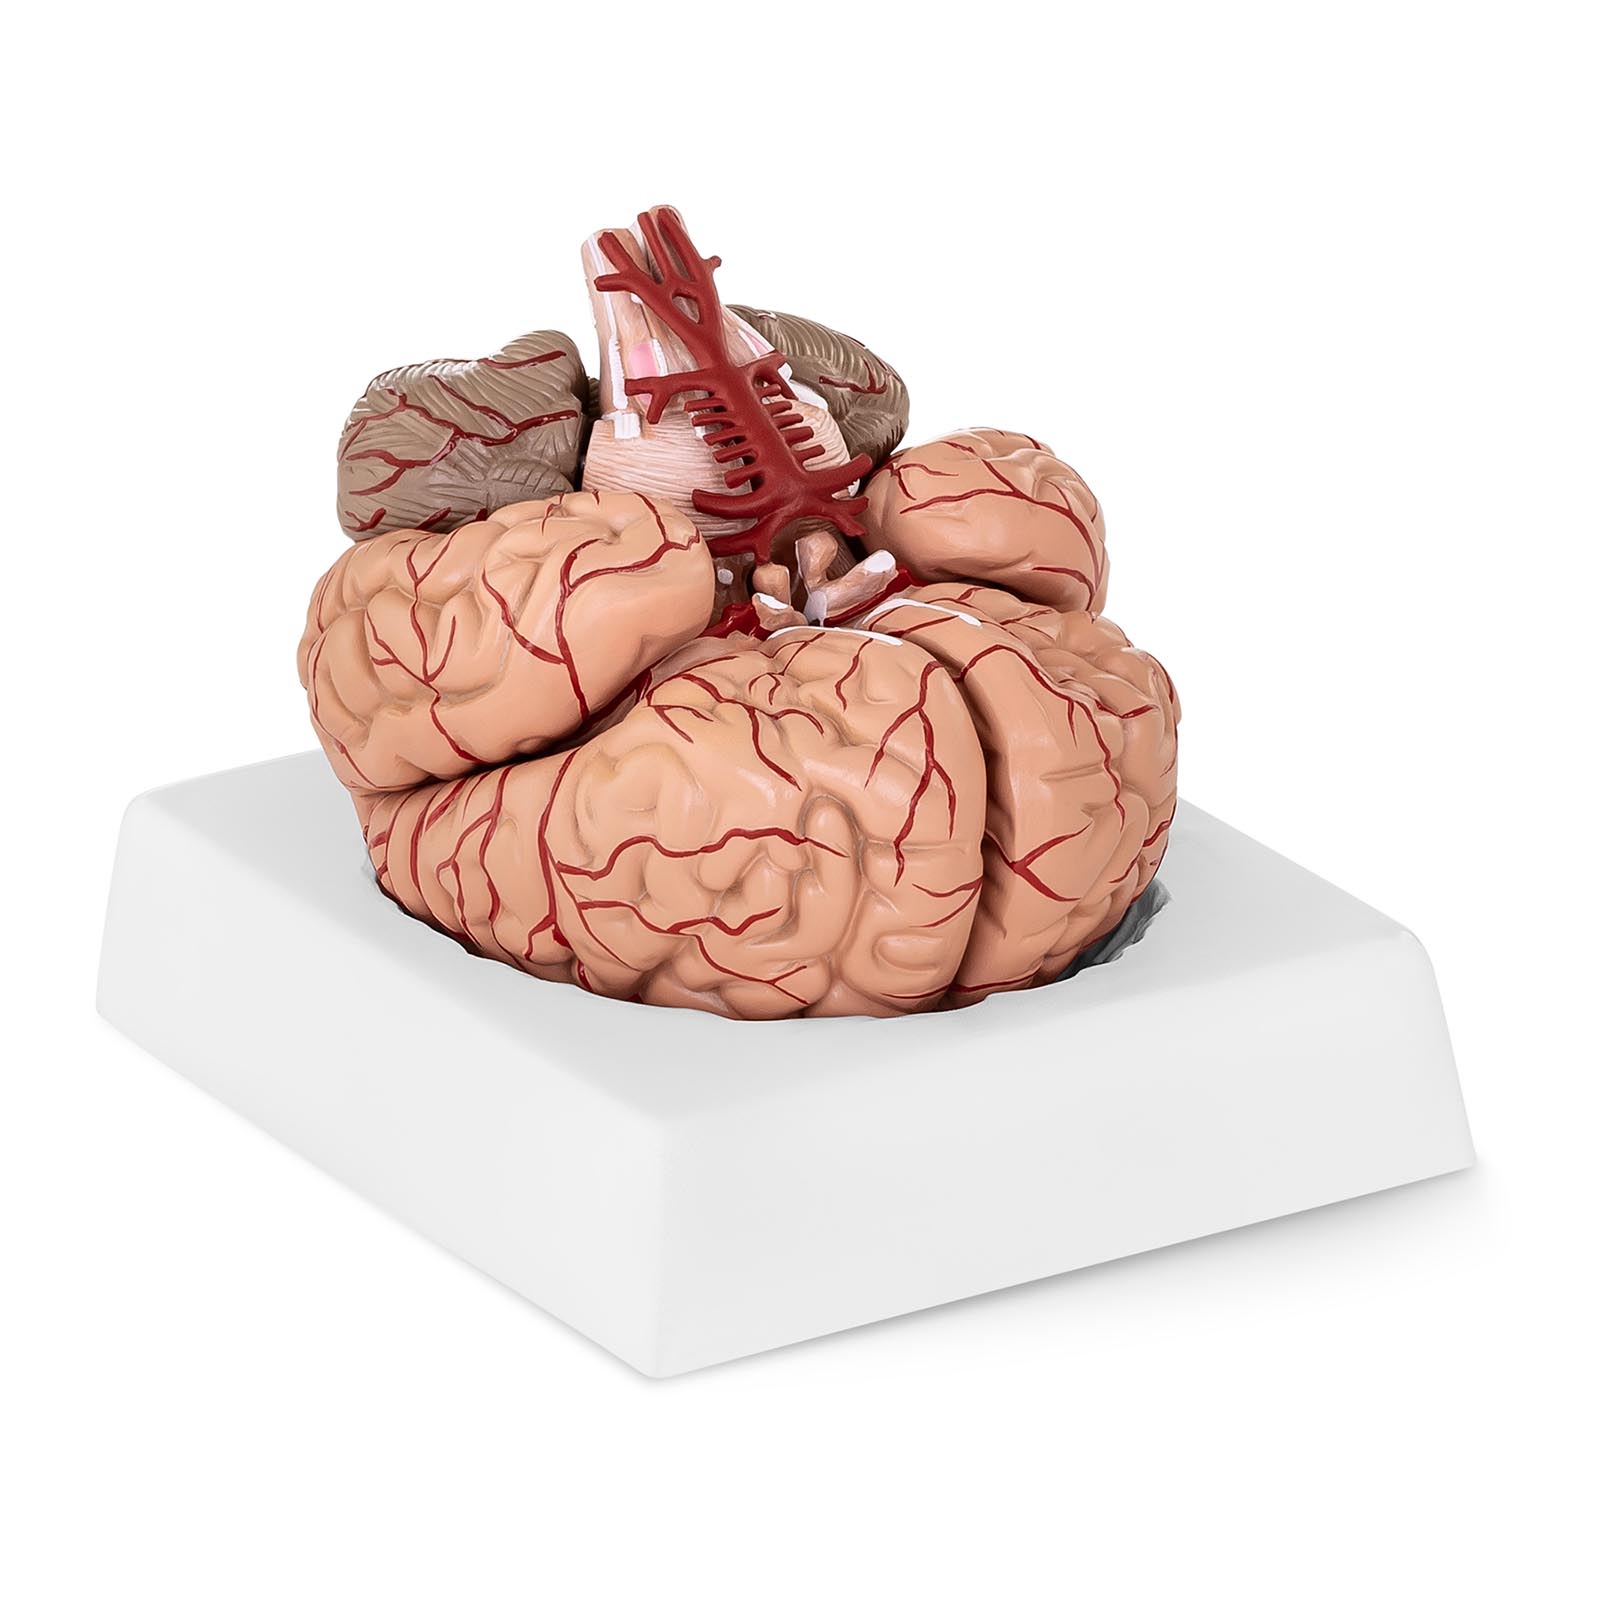 Modelo de cérebro - 9 segmentos - tamanho natural